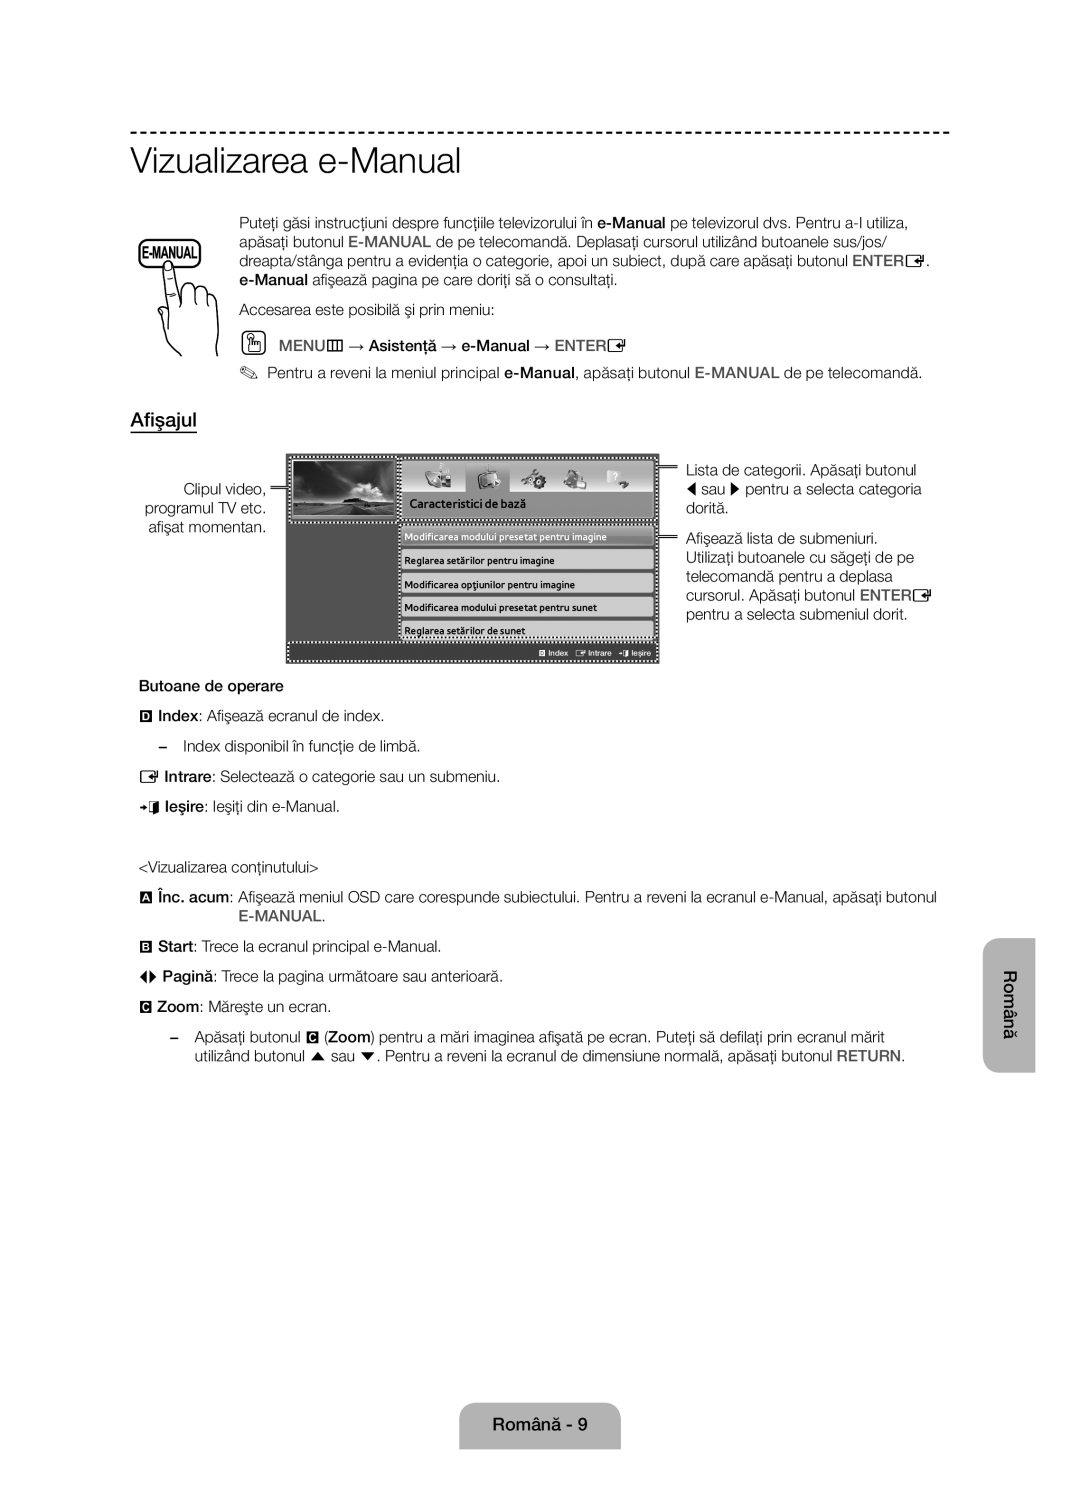 Samsung UE50J6100AWXZF, UE55J6100AWXZF Vizualizarea e-Manual, Afişajul, Clipul video, programul TV etc. afişat momentan 